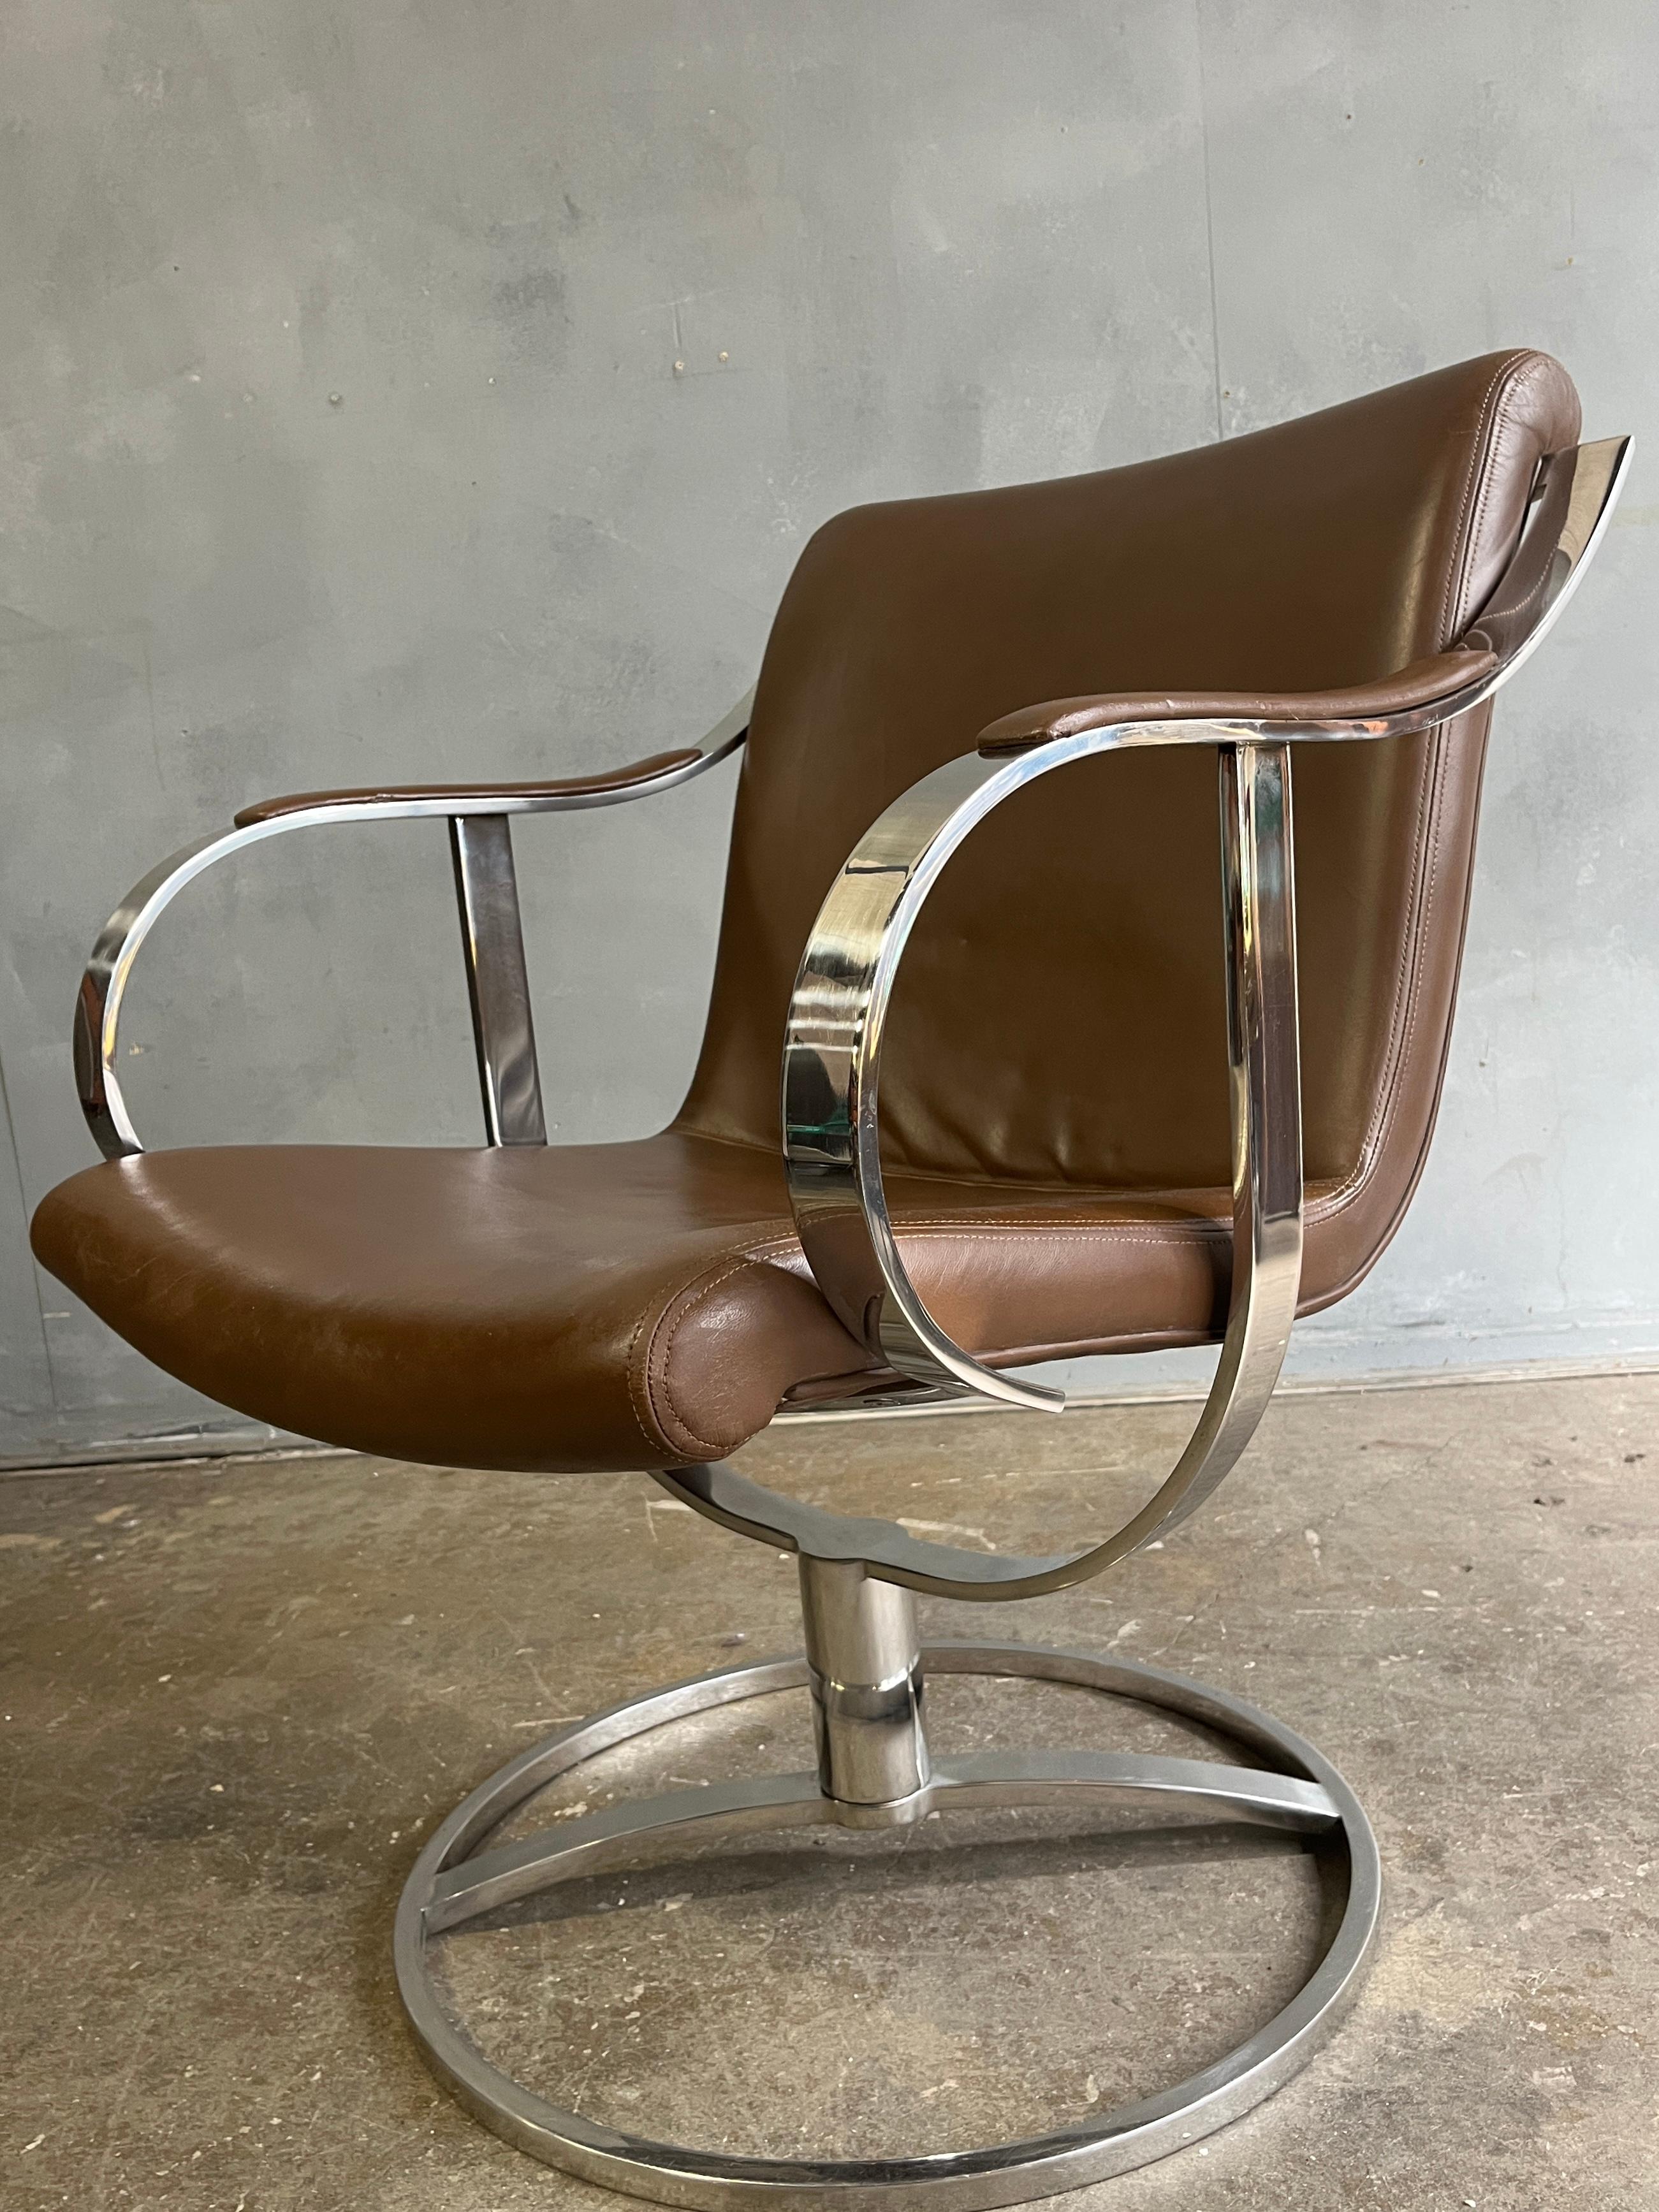 Gardner Leaver pour Steelcase Fauteuil en cuir brun selle. Le chrome est en bon état, sans rouille. Il présente l'angle idéal pour être utilisé comme chaise de bureau, chaise de lecture ou même chaise longue. Pivote à 360° avec facilité. Il s'agit